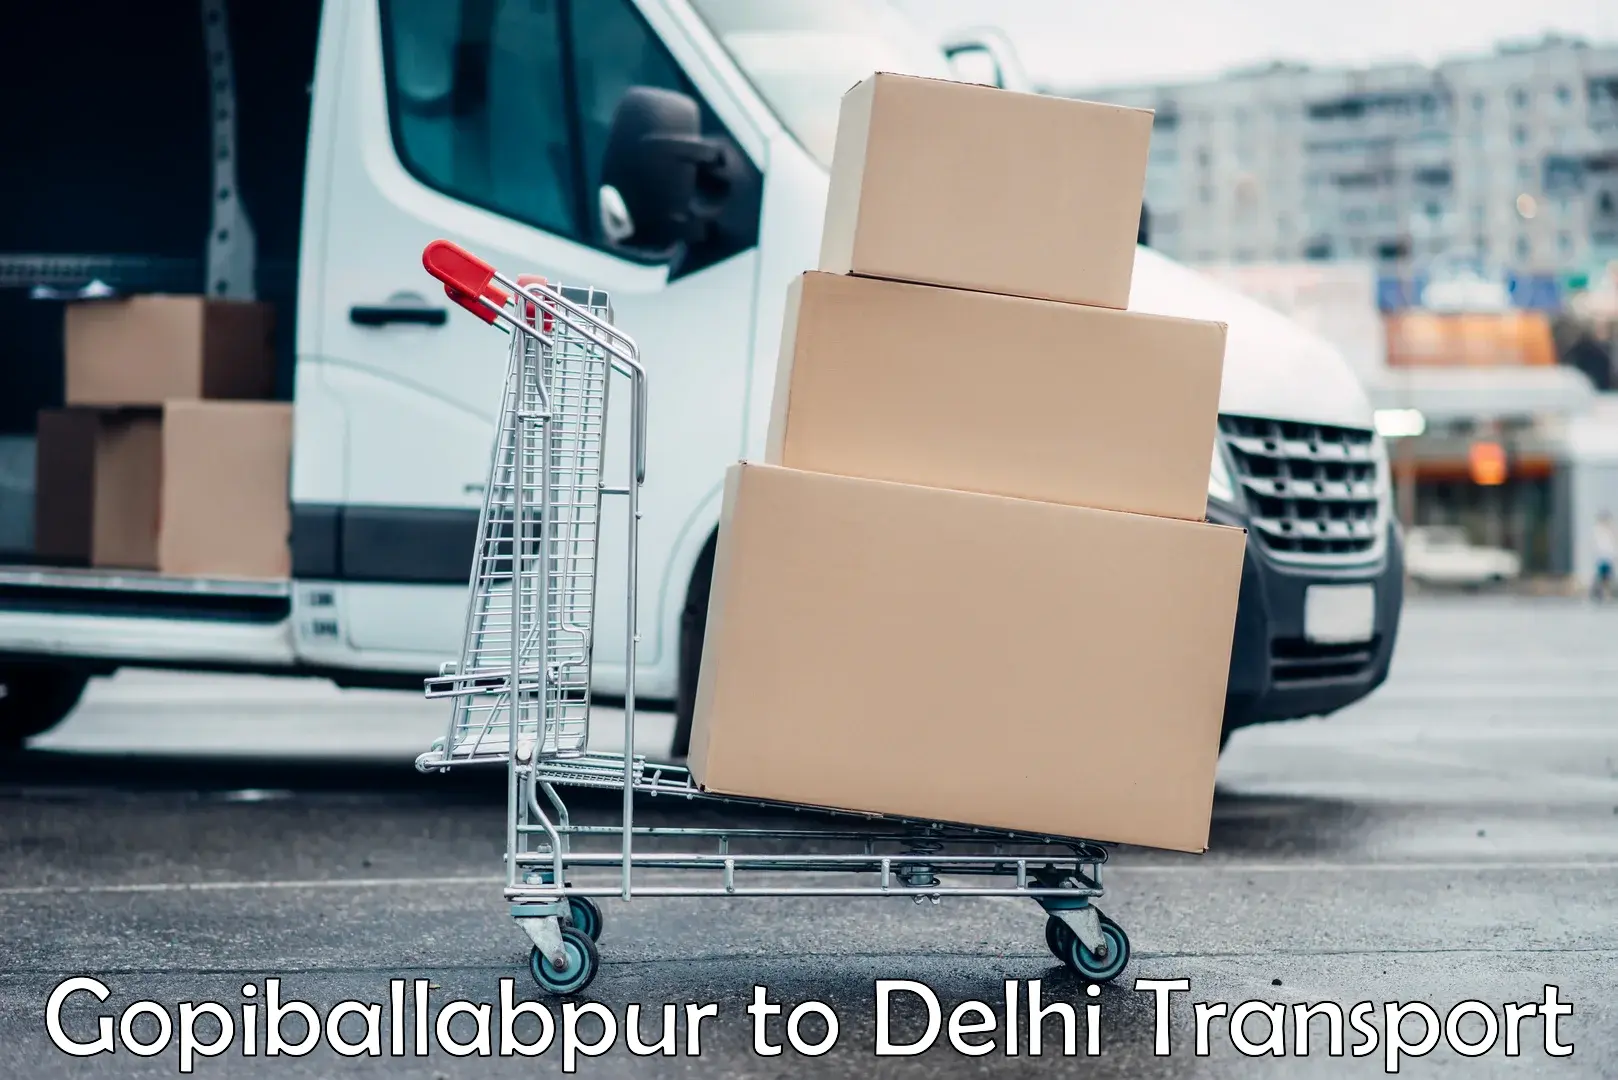 Two wheeler parcel service Gopiballabpur to Sarojini Nagar